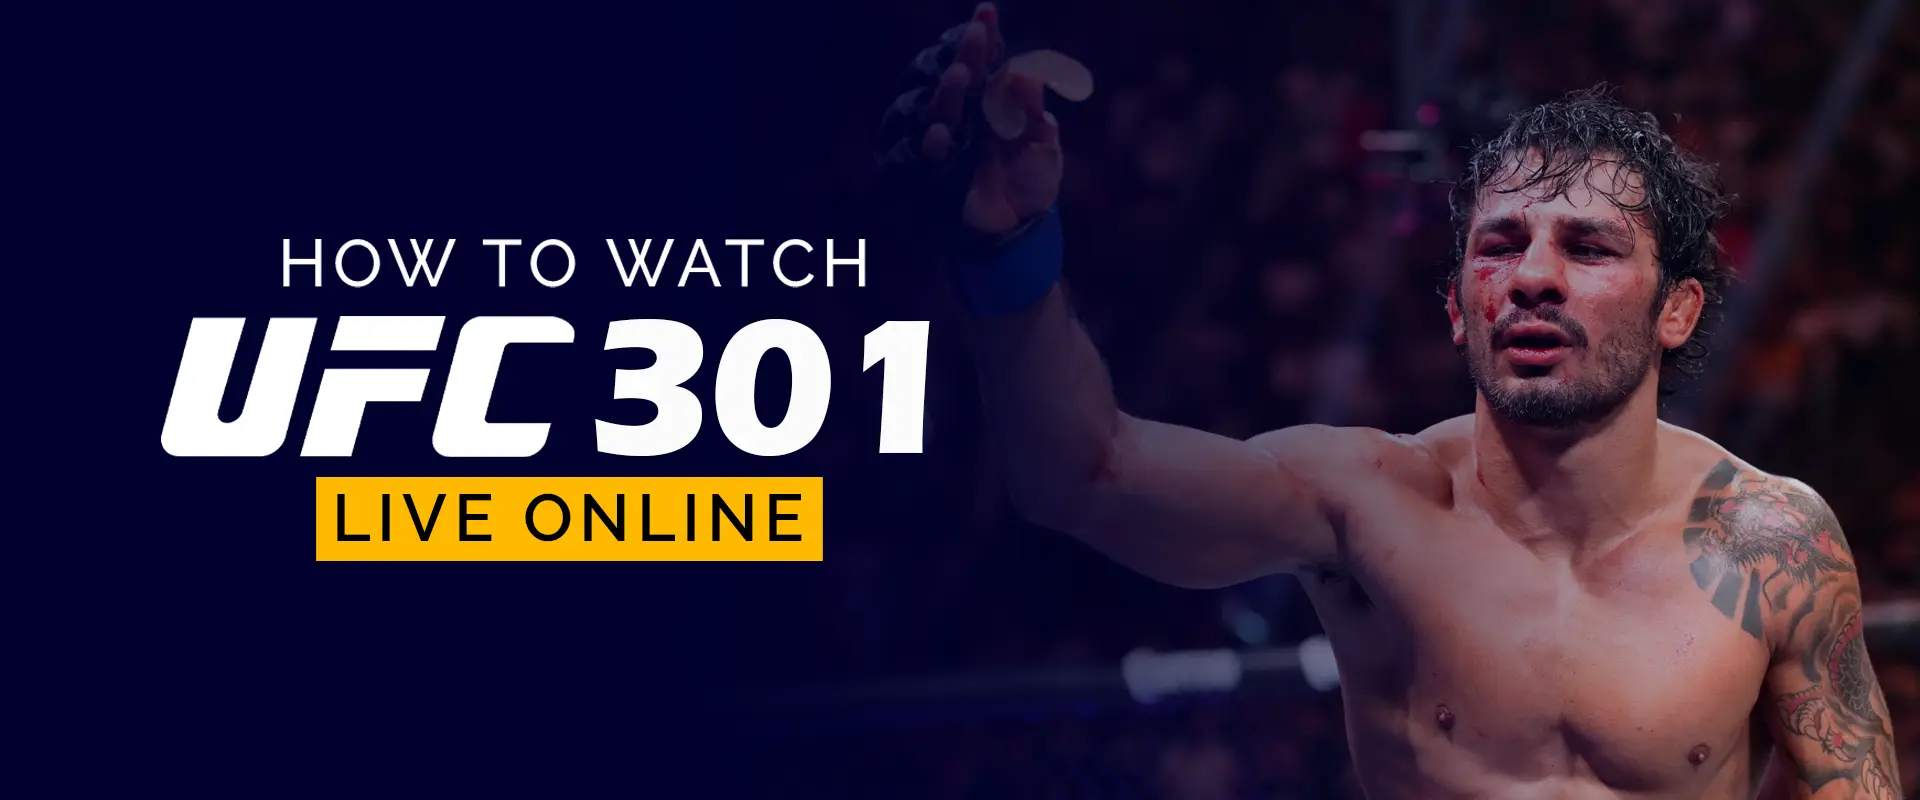 如何观看 UFC 301 在线直播 540